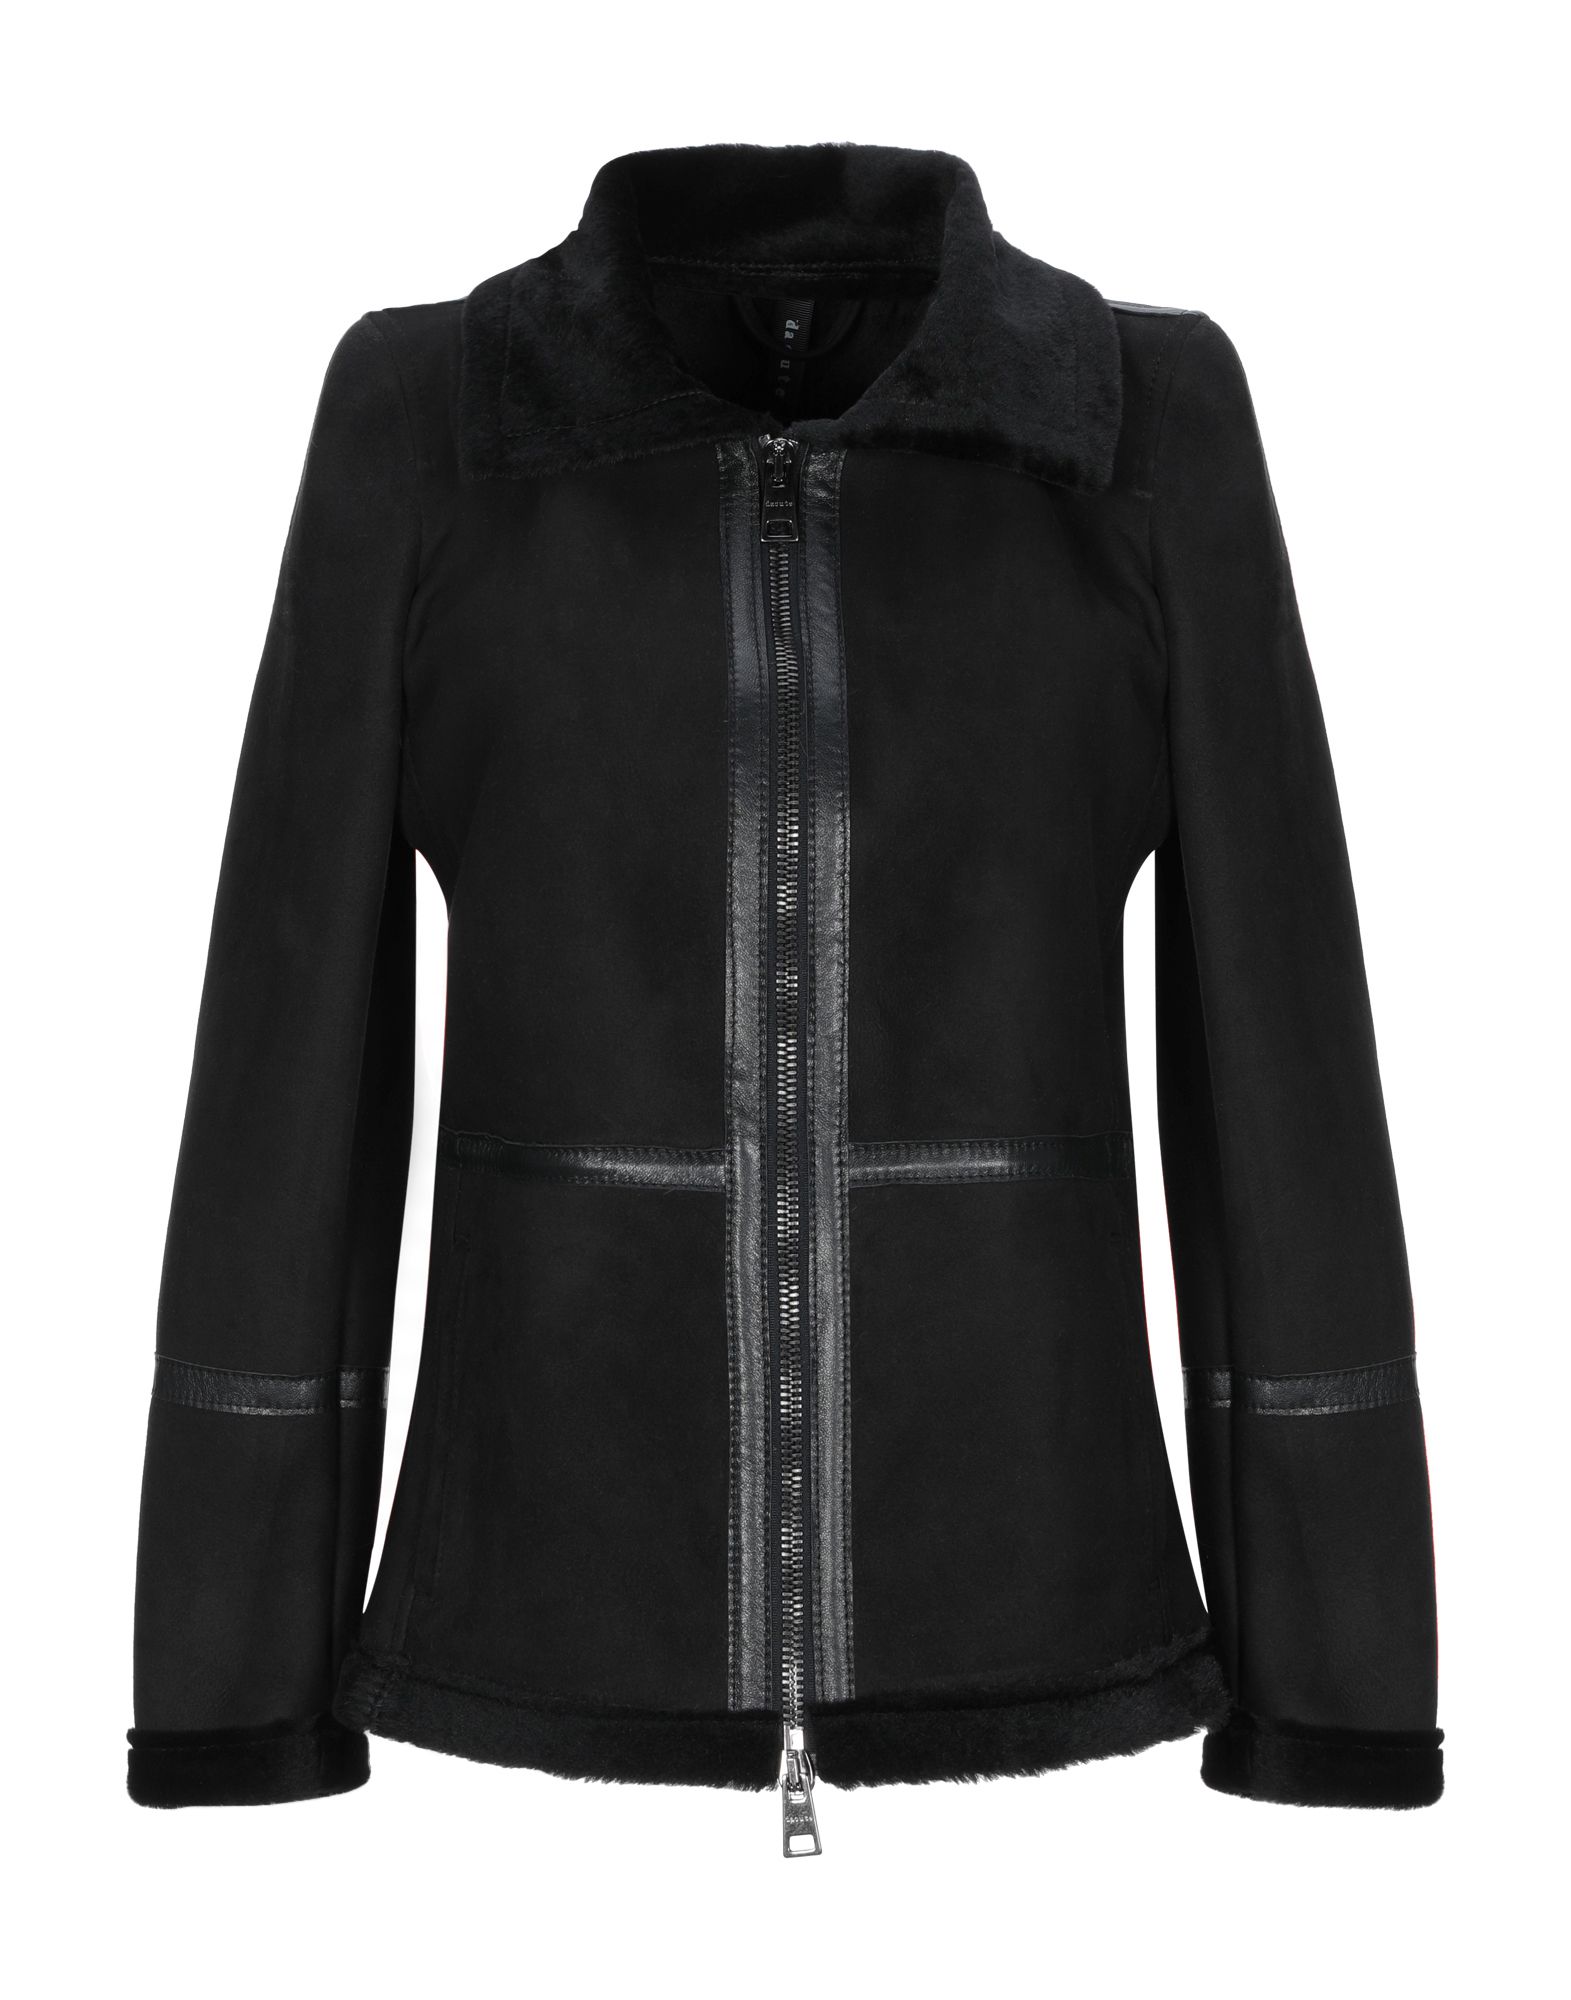 Куртка  - Коричневый,Черный цвет